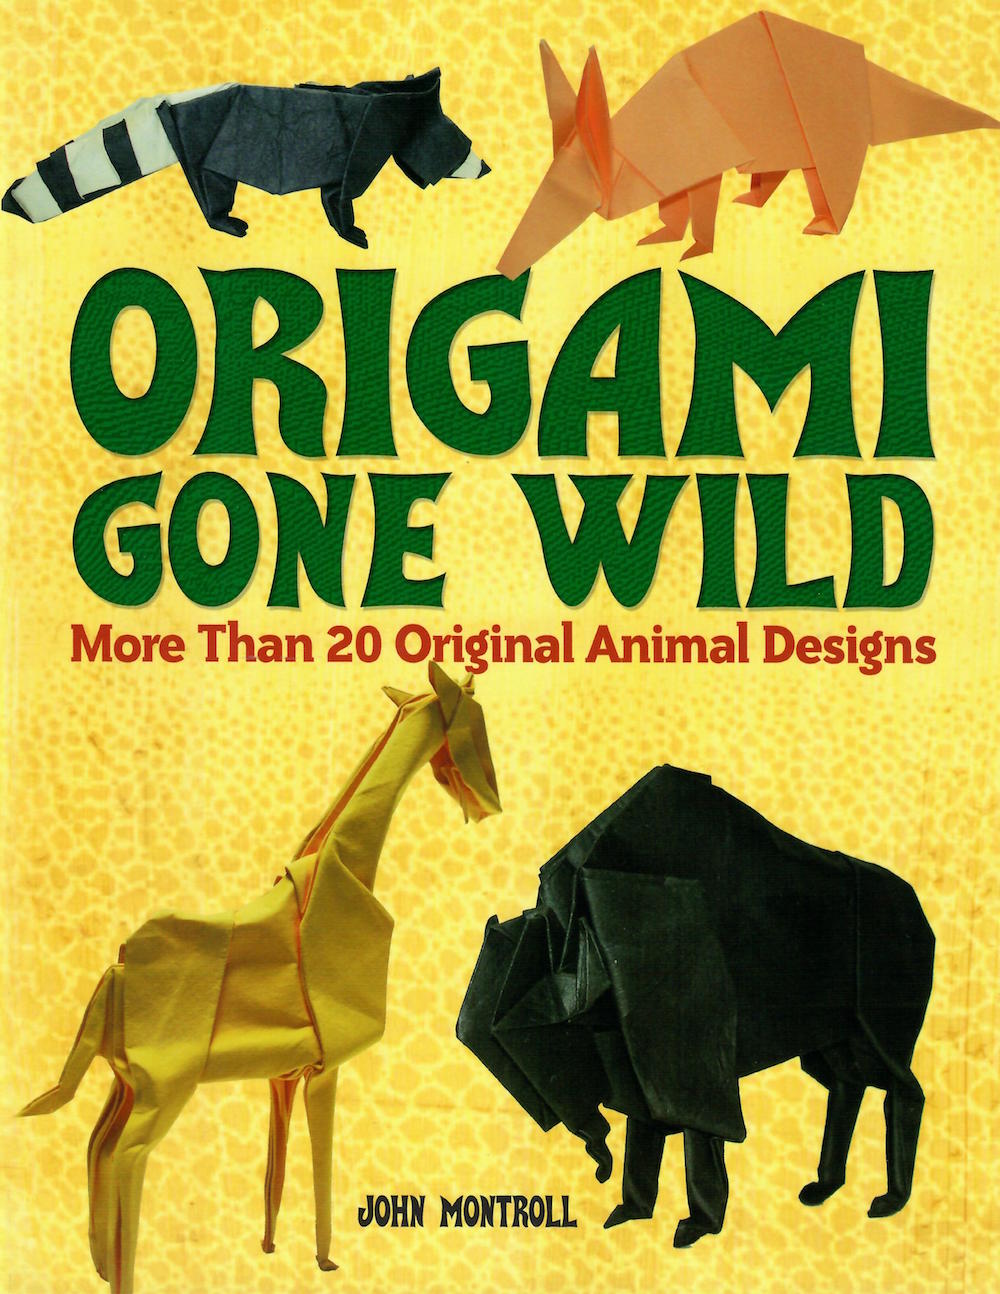 Origami Gone Wild